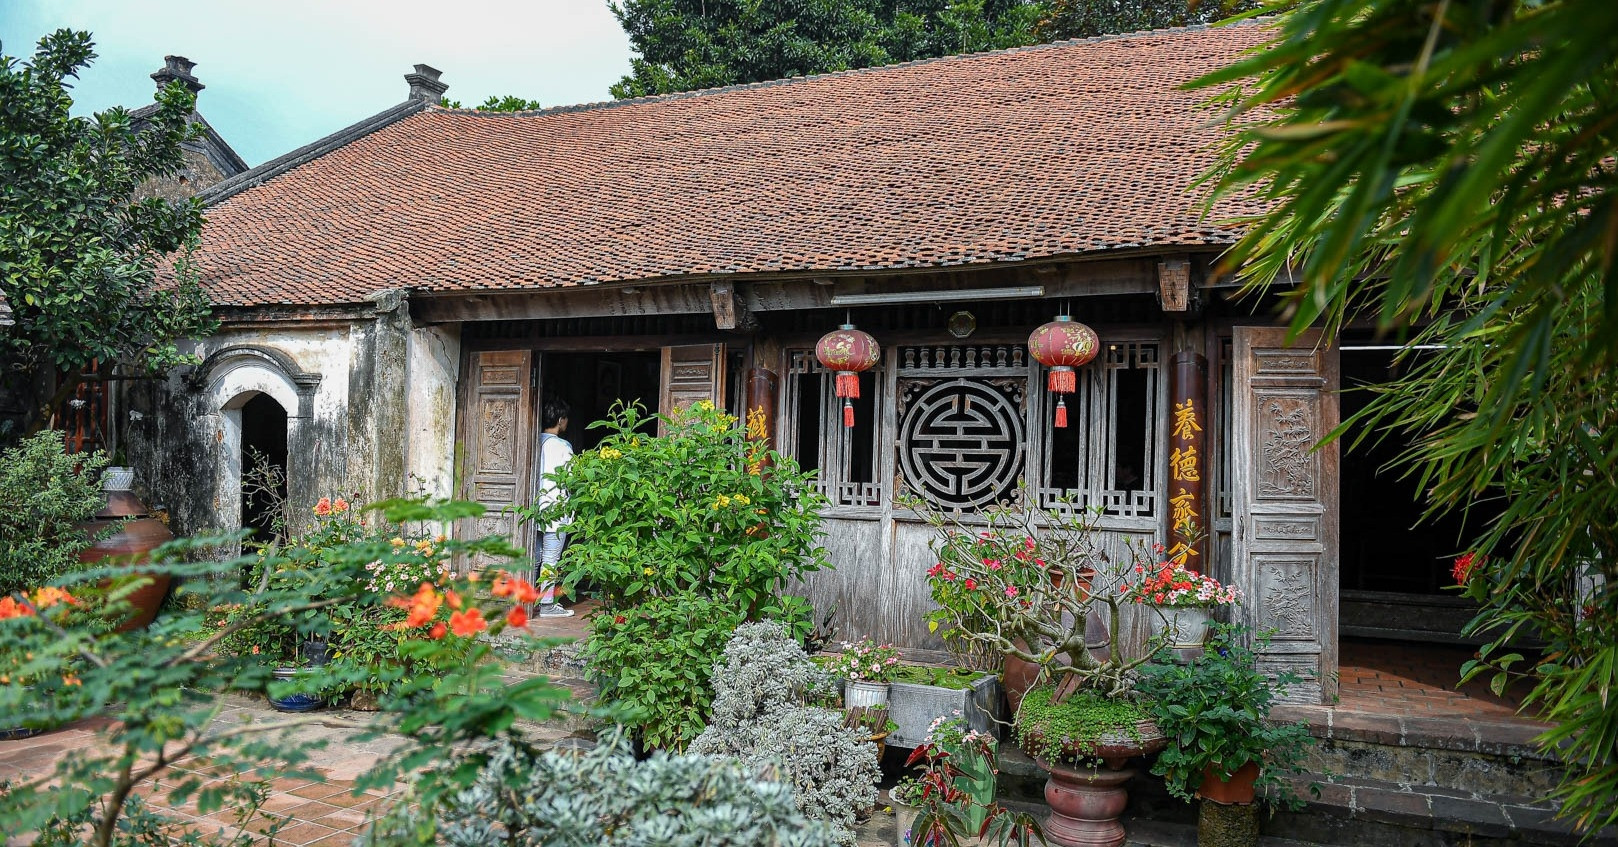 View - 'Xuyên không' thăm ngôi nhà cổ 300 năm tuổi kiến trúc độc đáo ở ngoại ô Hà Nội